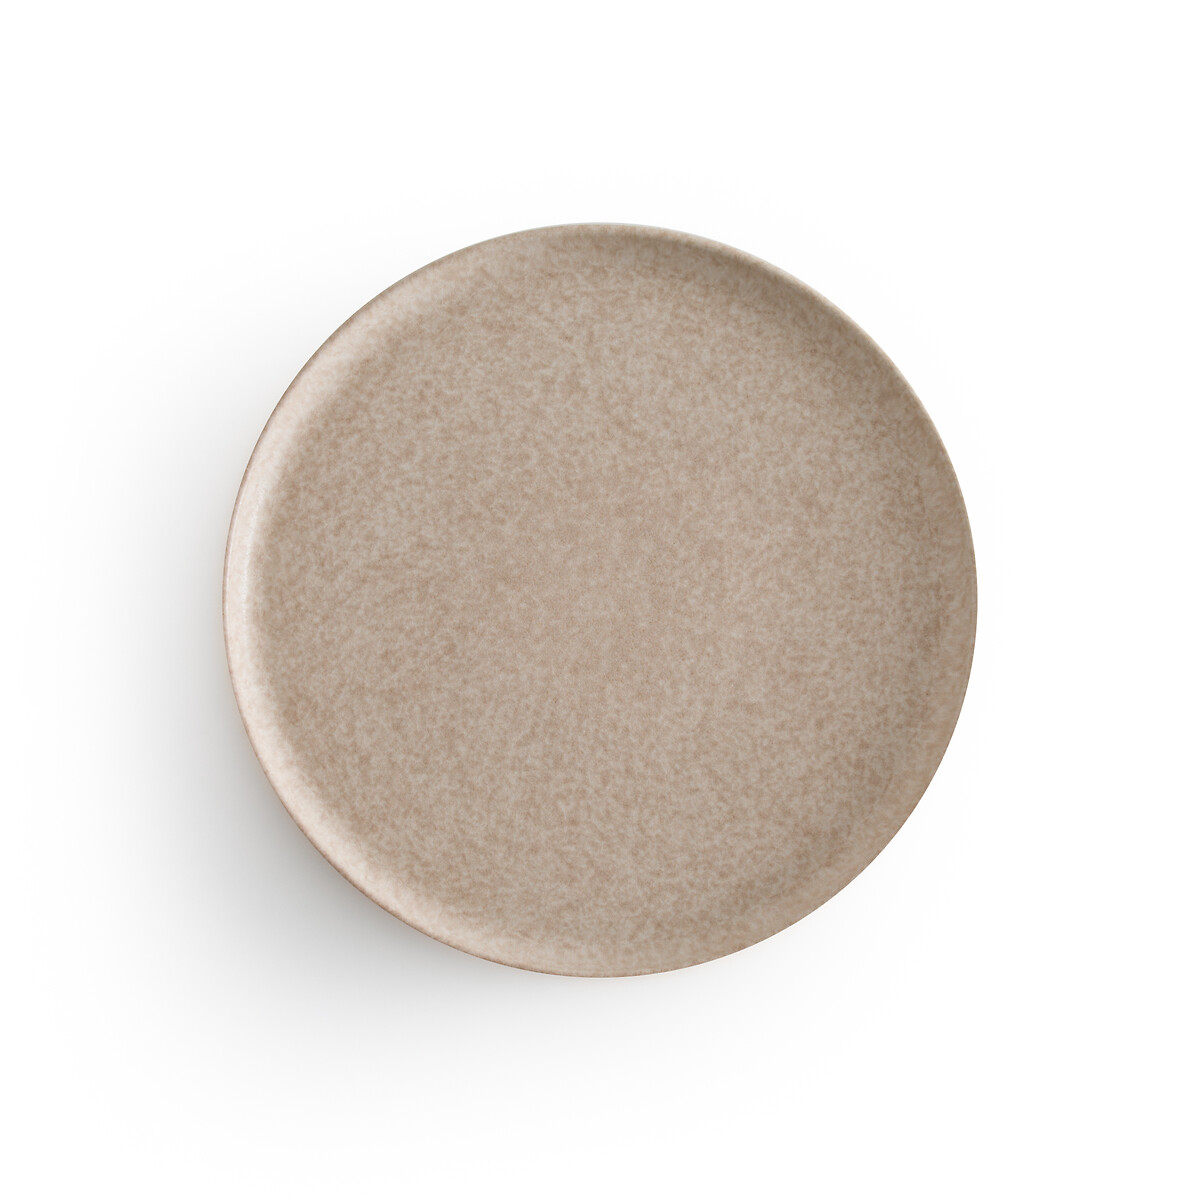 Комплект из четырех тарелок плоских из керамики Rusty единый размер бежевый комплект из четырех плоских тарелок из керамики cream единый размер бежевый